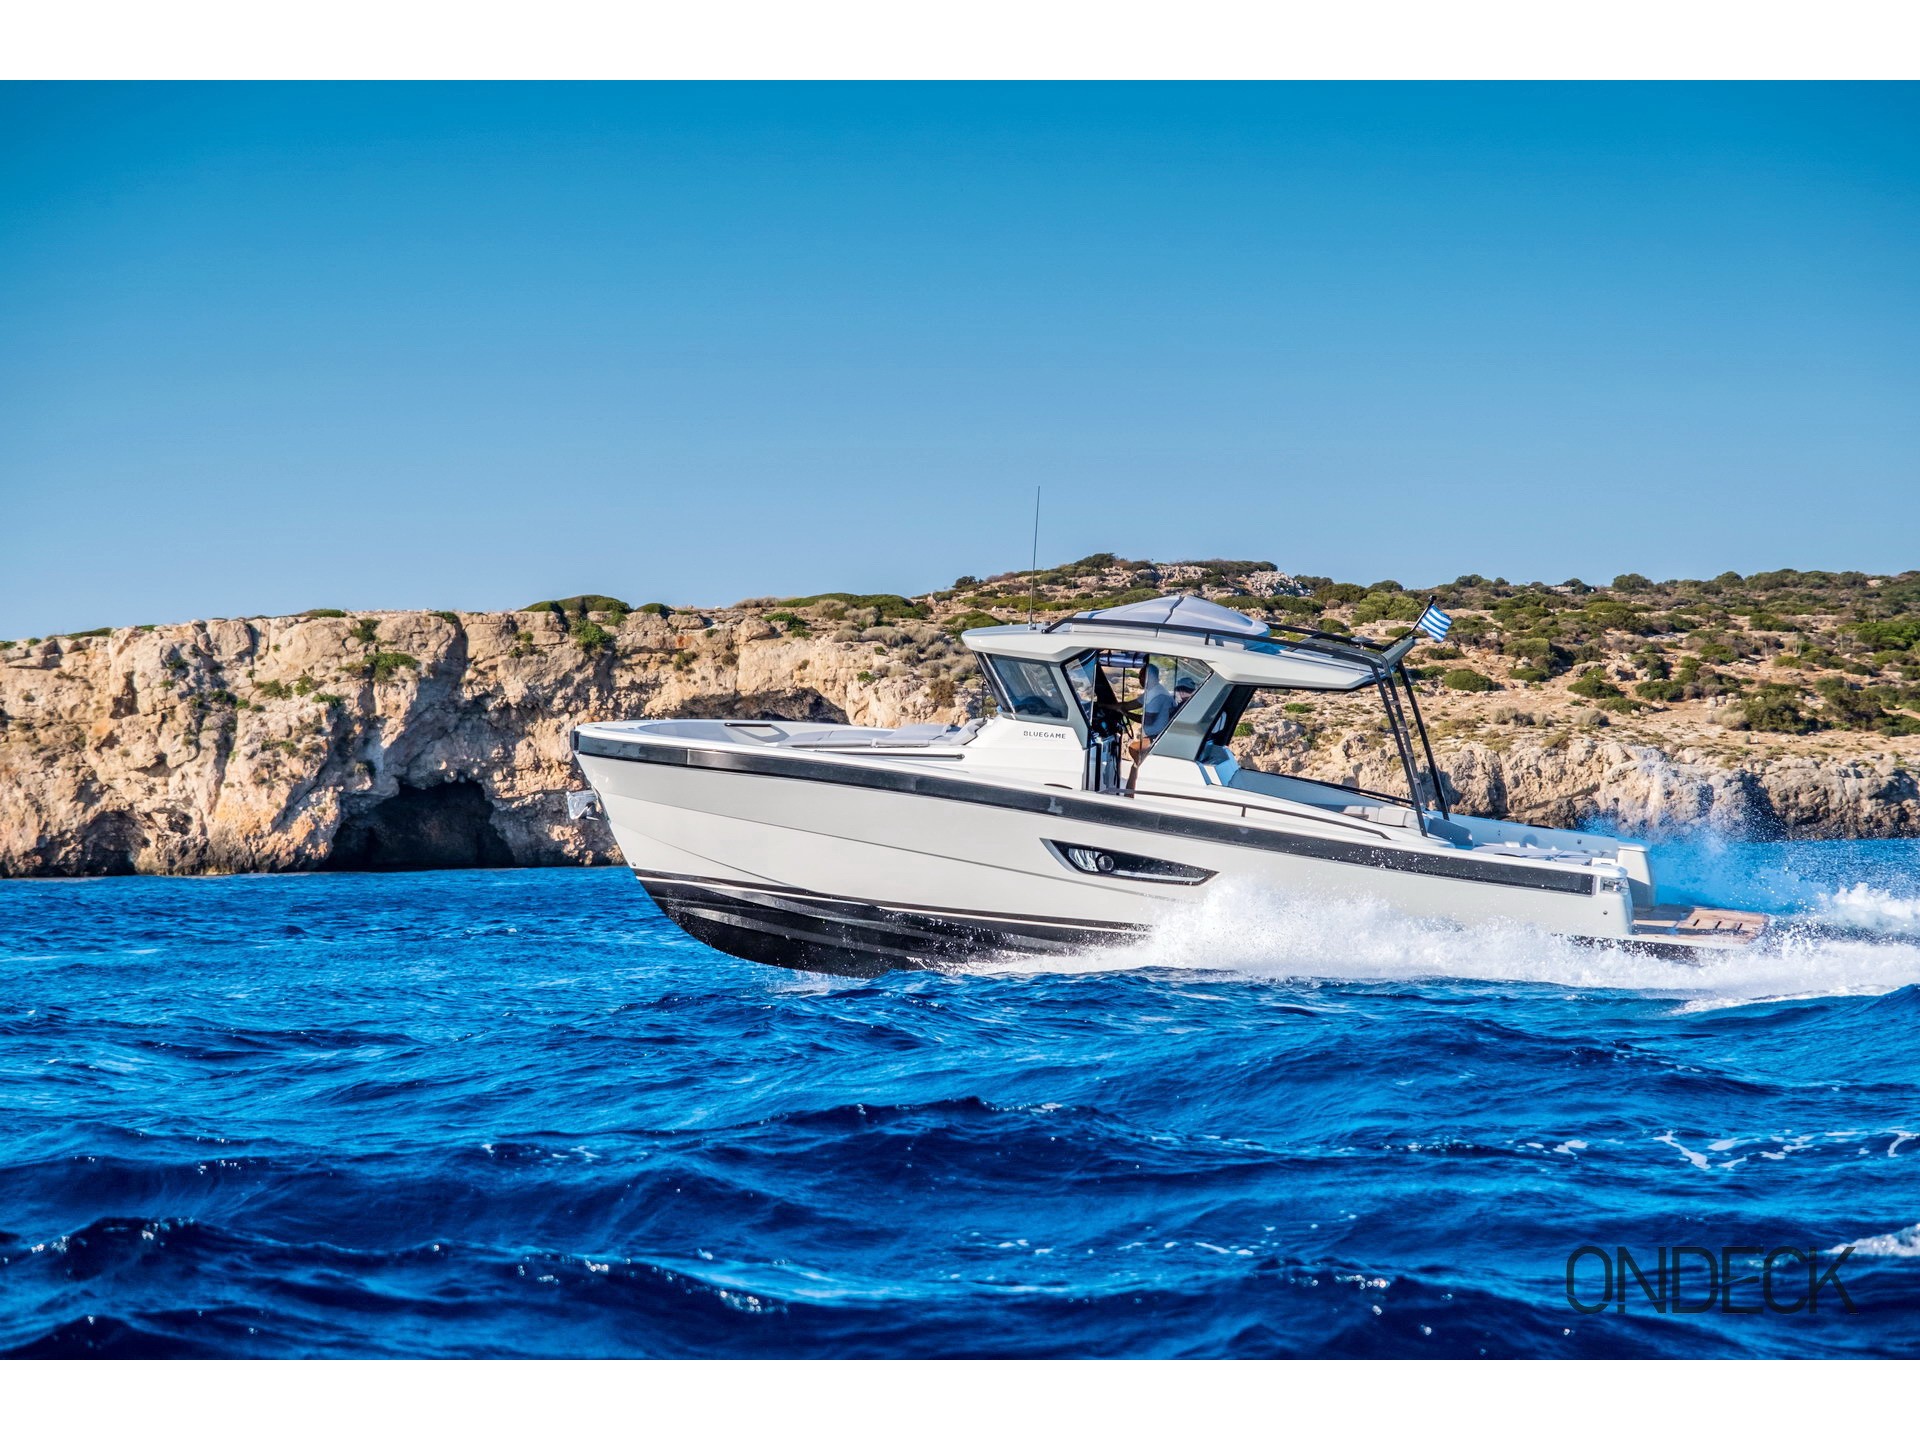 Skipper 30 - Motor Boat Charter worldwide & Boat hire in Greece Cyclades Islands Mykonos Mykonos 1